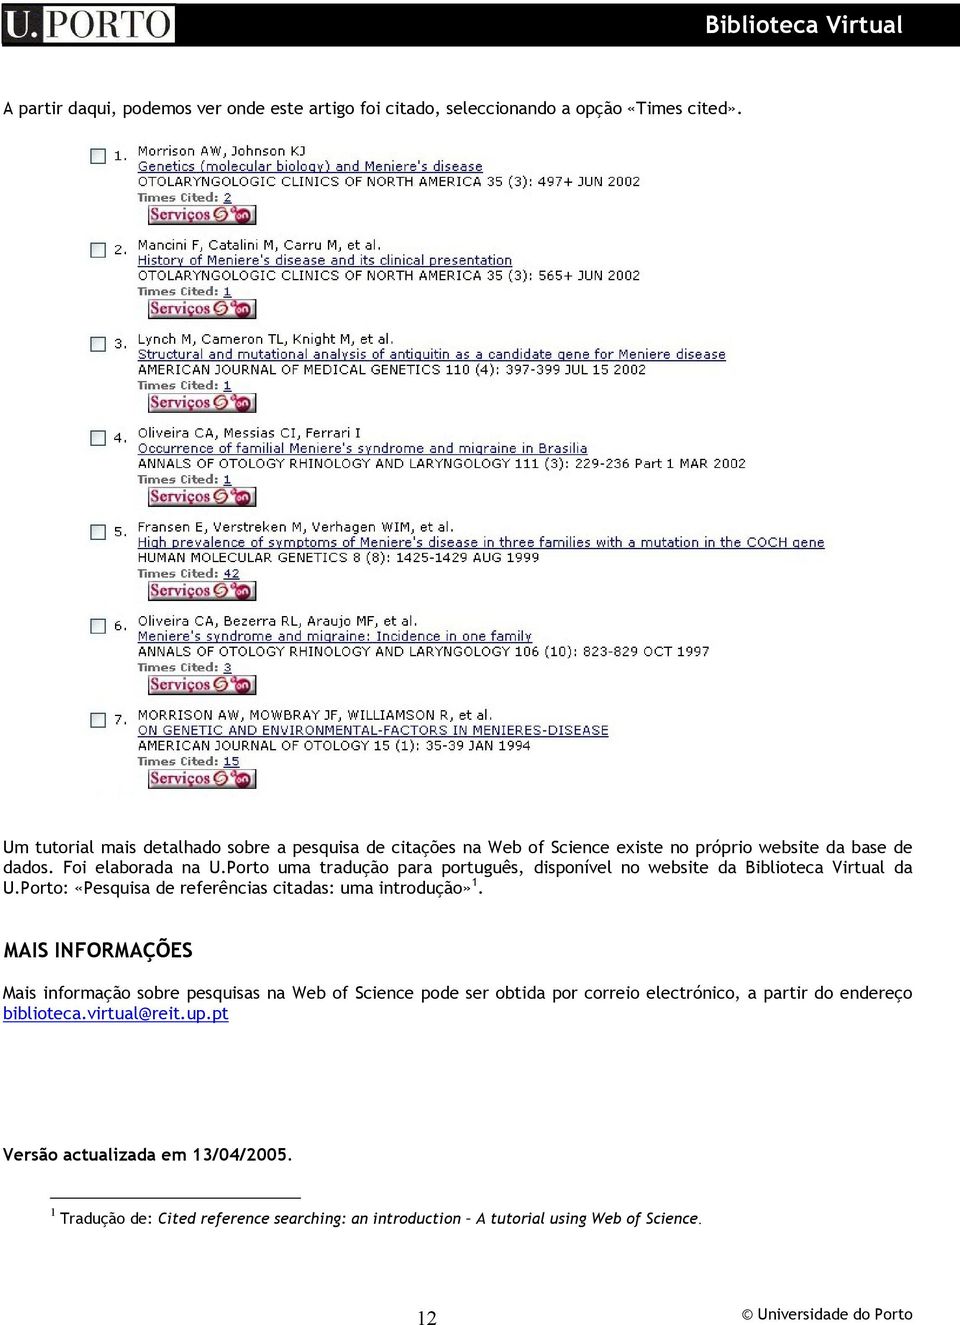 Porto uma tradução para português, disponível no website da Biblioteca Virtual da U.Porto: «Pesquisa de referências citadas: uma introdução» 1.